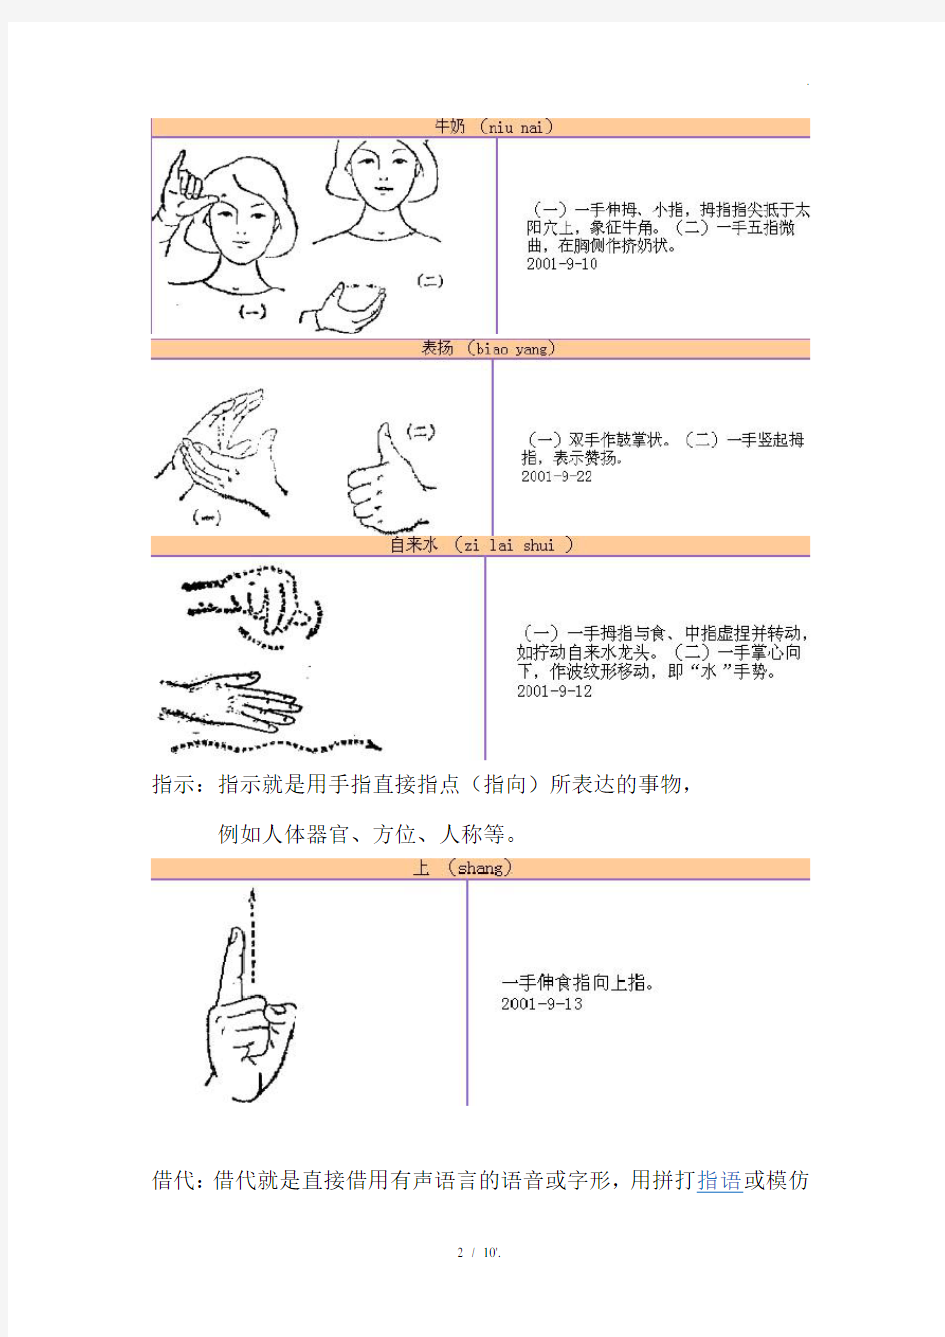 手语构成的三种方法：